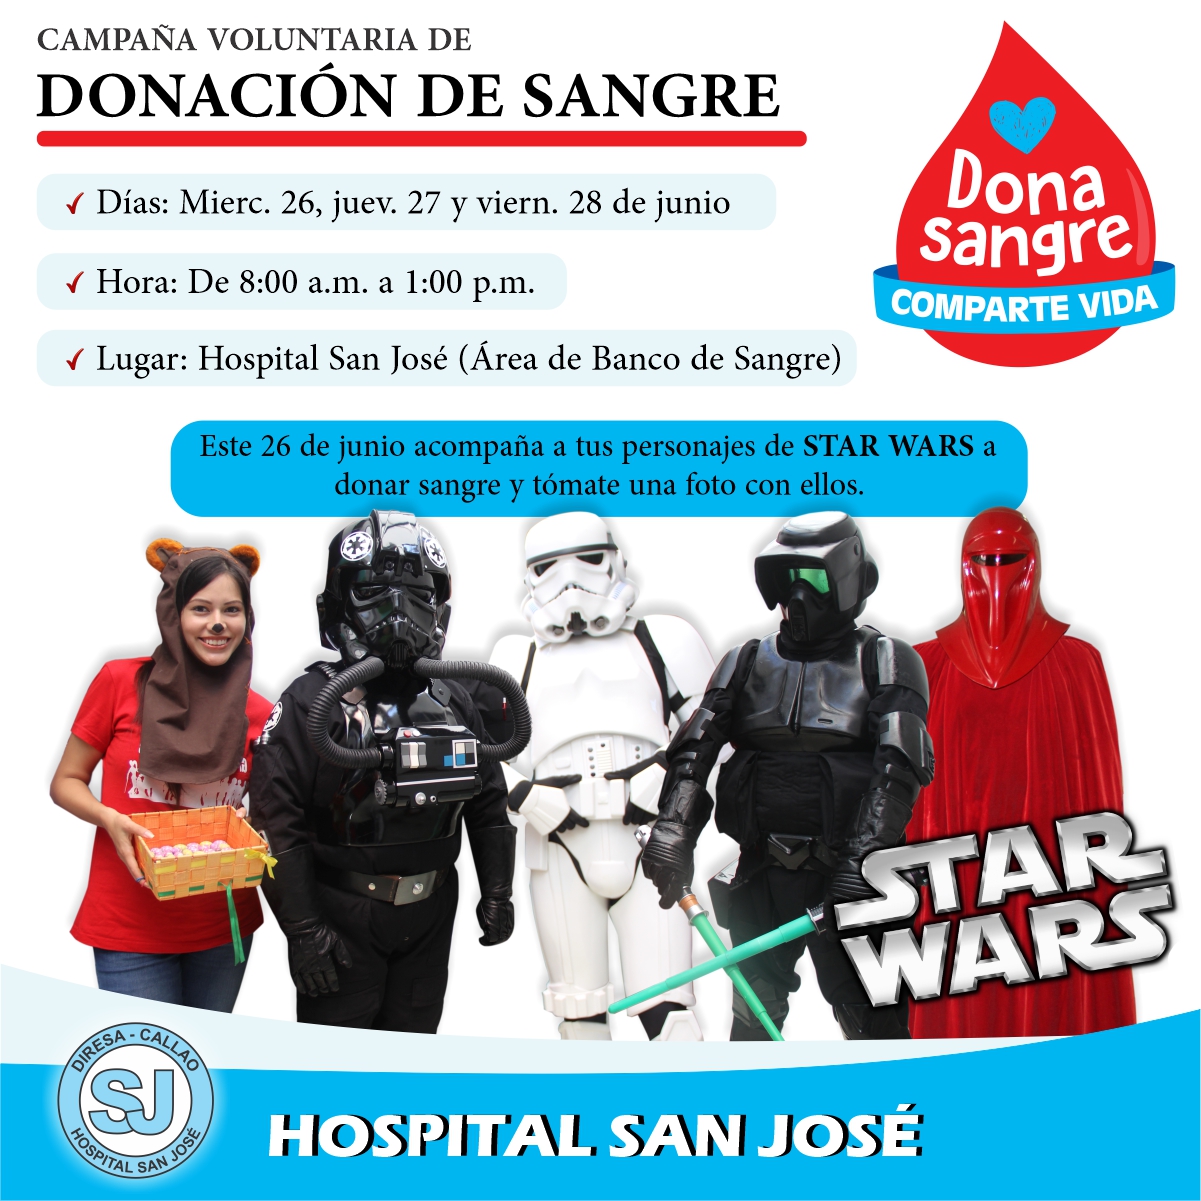 PERSONAJES DE STAR WARS ESTARÁN PRESENTES EN CAMPAÑA DE DONACIÓN DE SANGRE EN EL HOSPITAL SAN JOSÉ DEL CALLAO